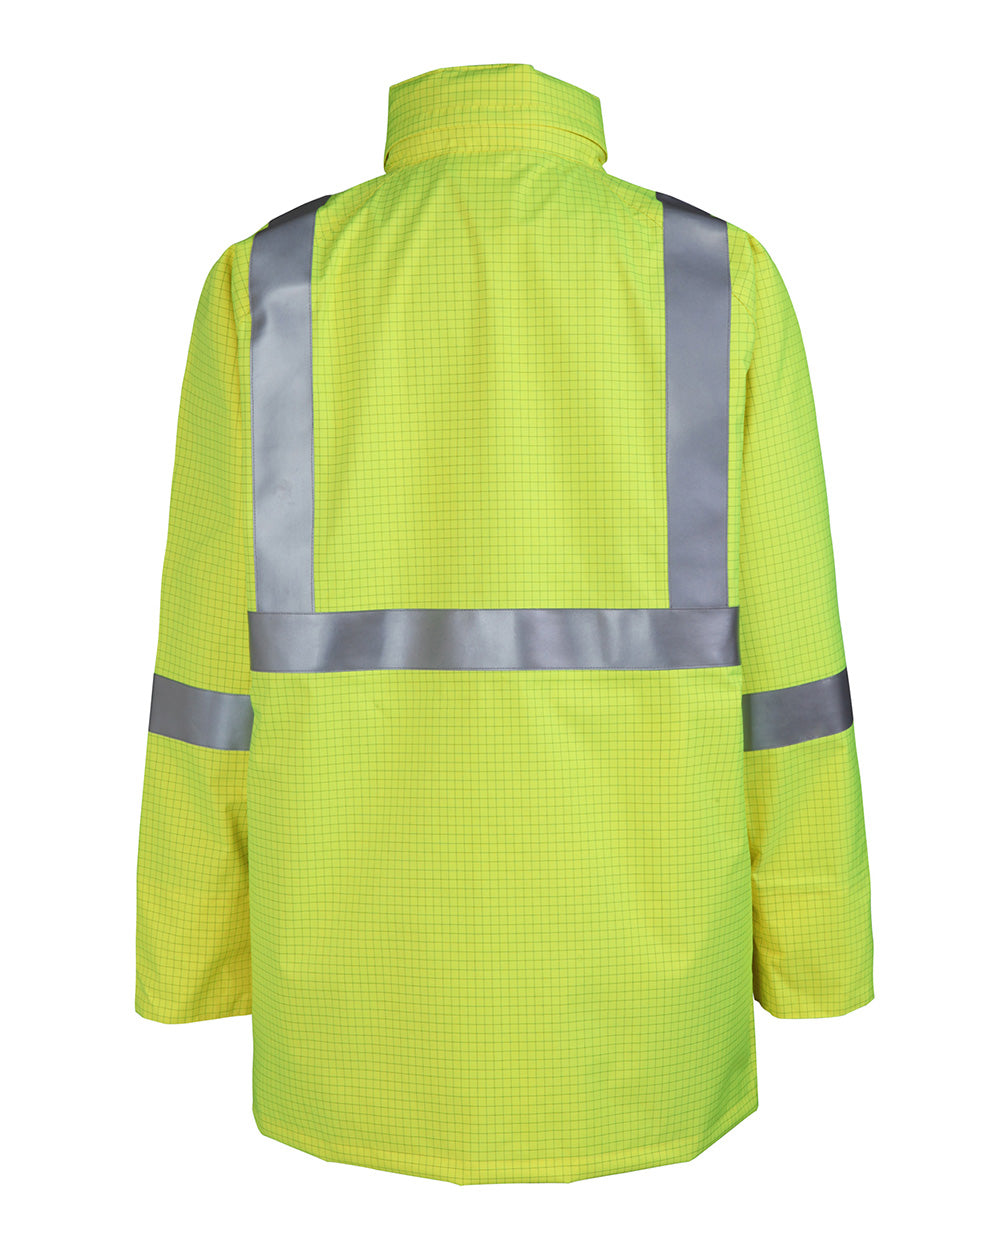 Barrier Jacket in Fluoro Yellow